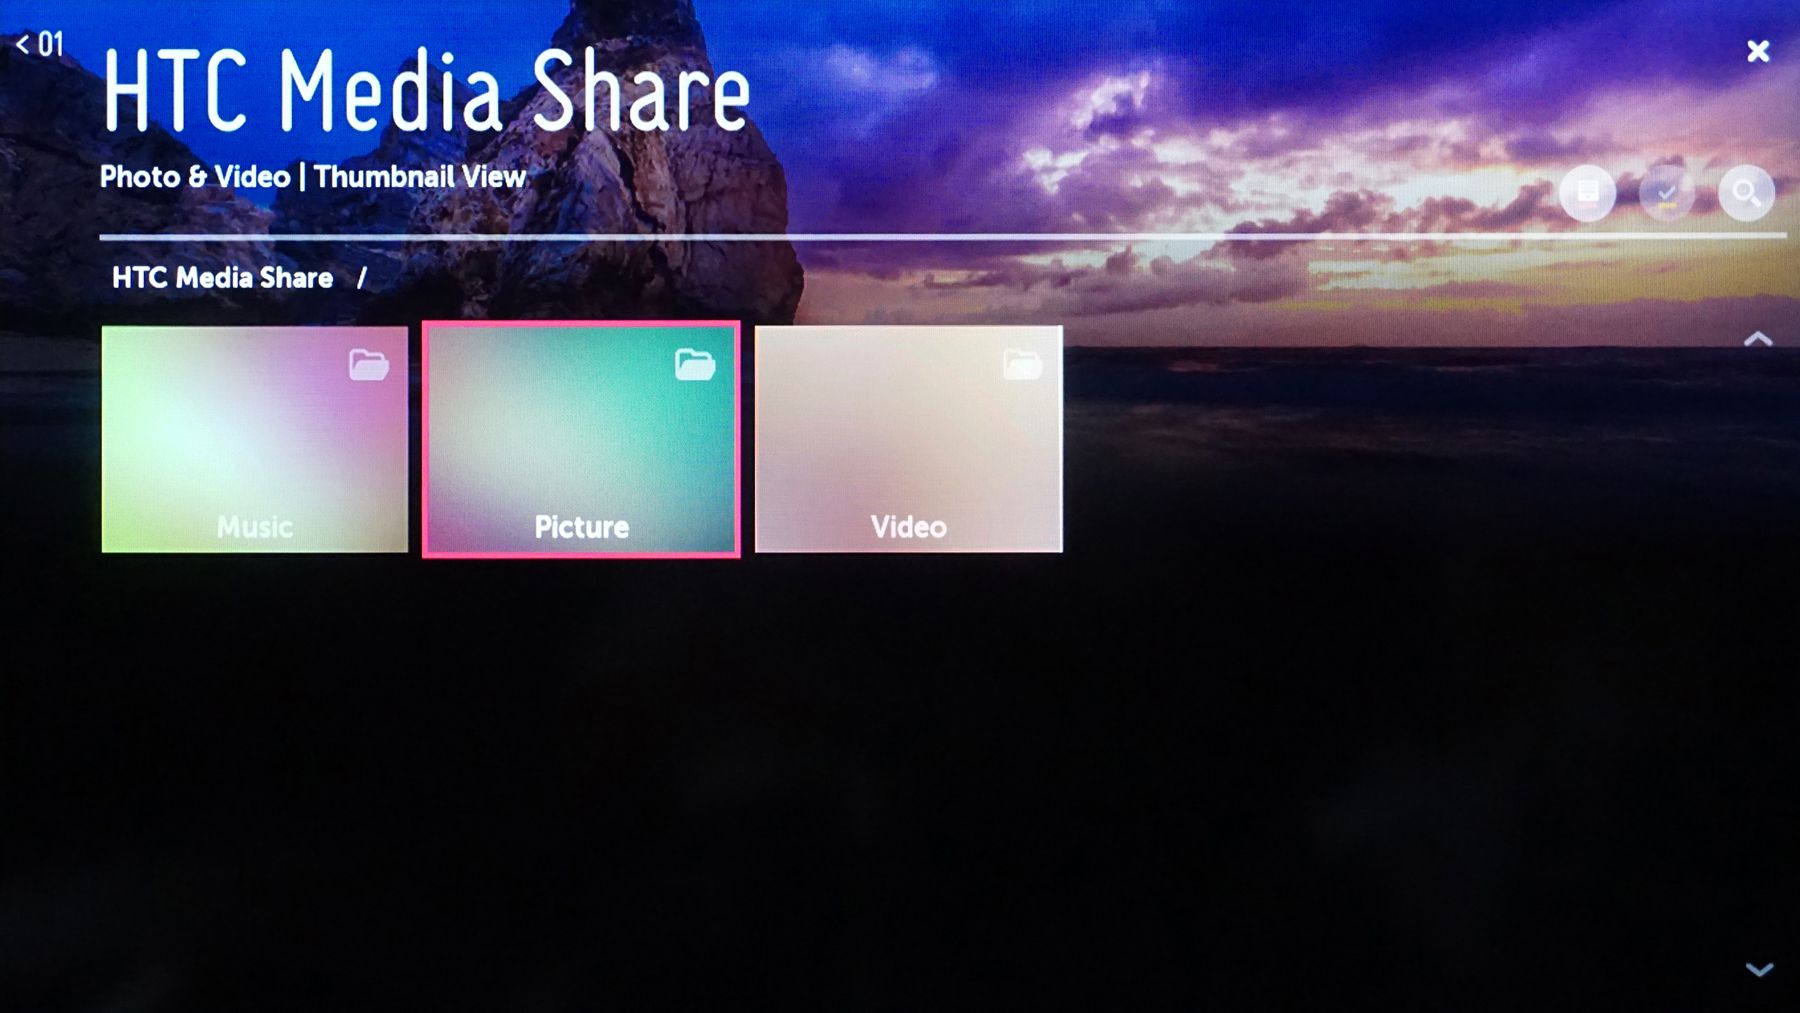 Compartilhamento de conteúdo da LG Smart TV - HTC Media Share